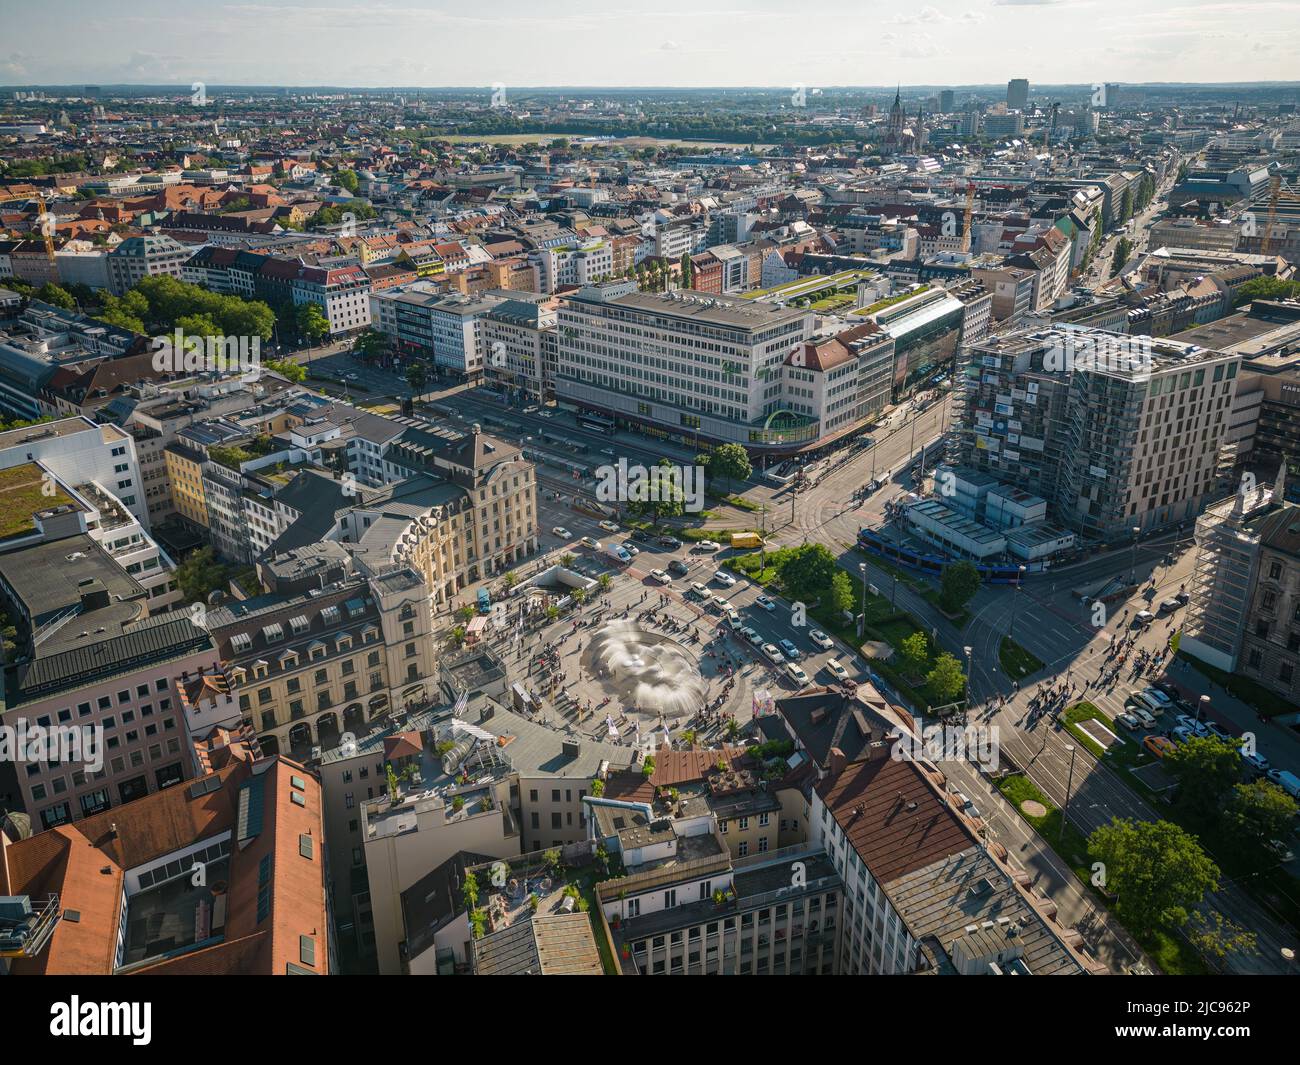 Monaco di Baviera, Germania - Giugno 10: Vista aerea della facciata dell'edificio del magazzino Galeria Kaufhof a Stachus il 10 giugno 2022 a Monaco di Baviera. Il magazzino è Foto Stock